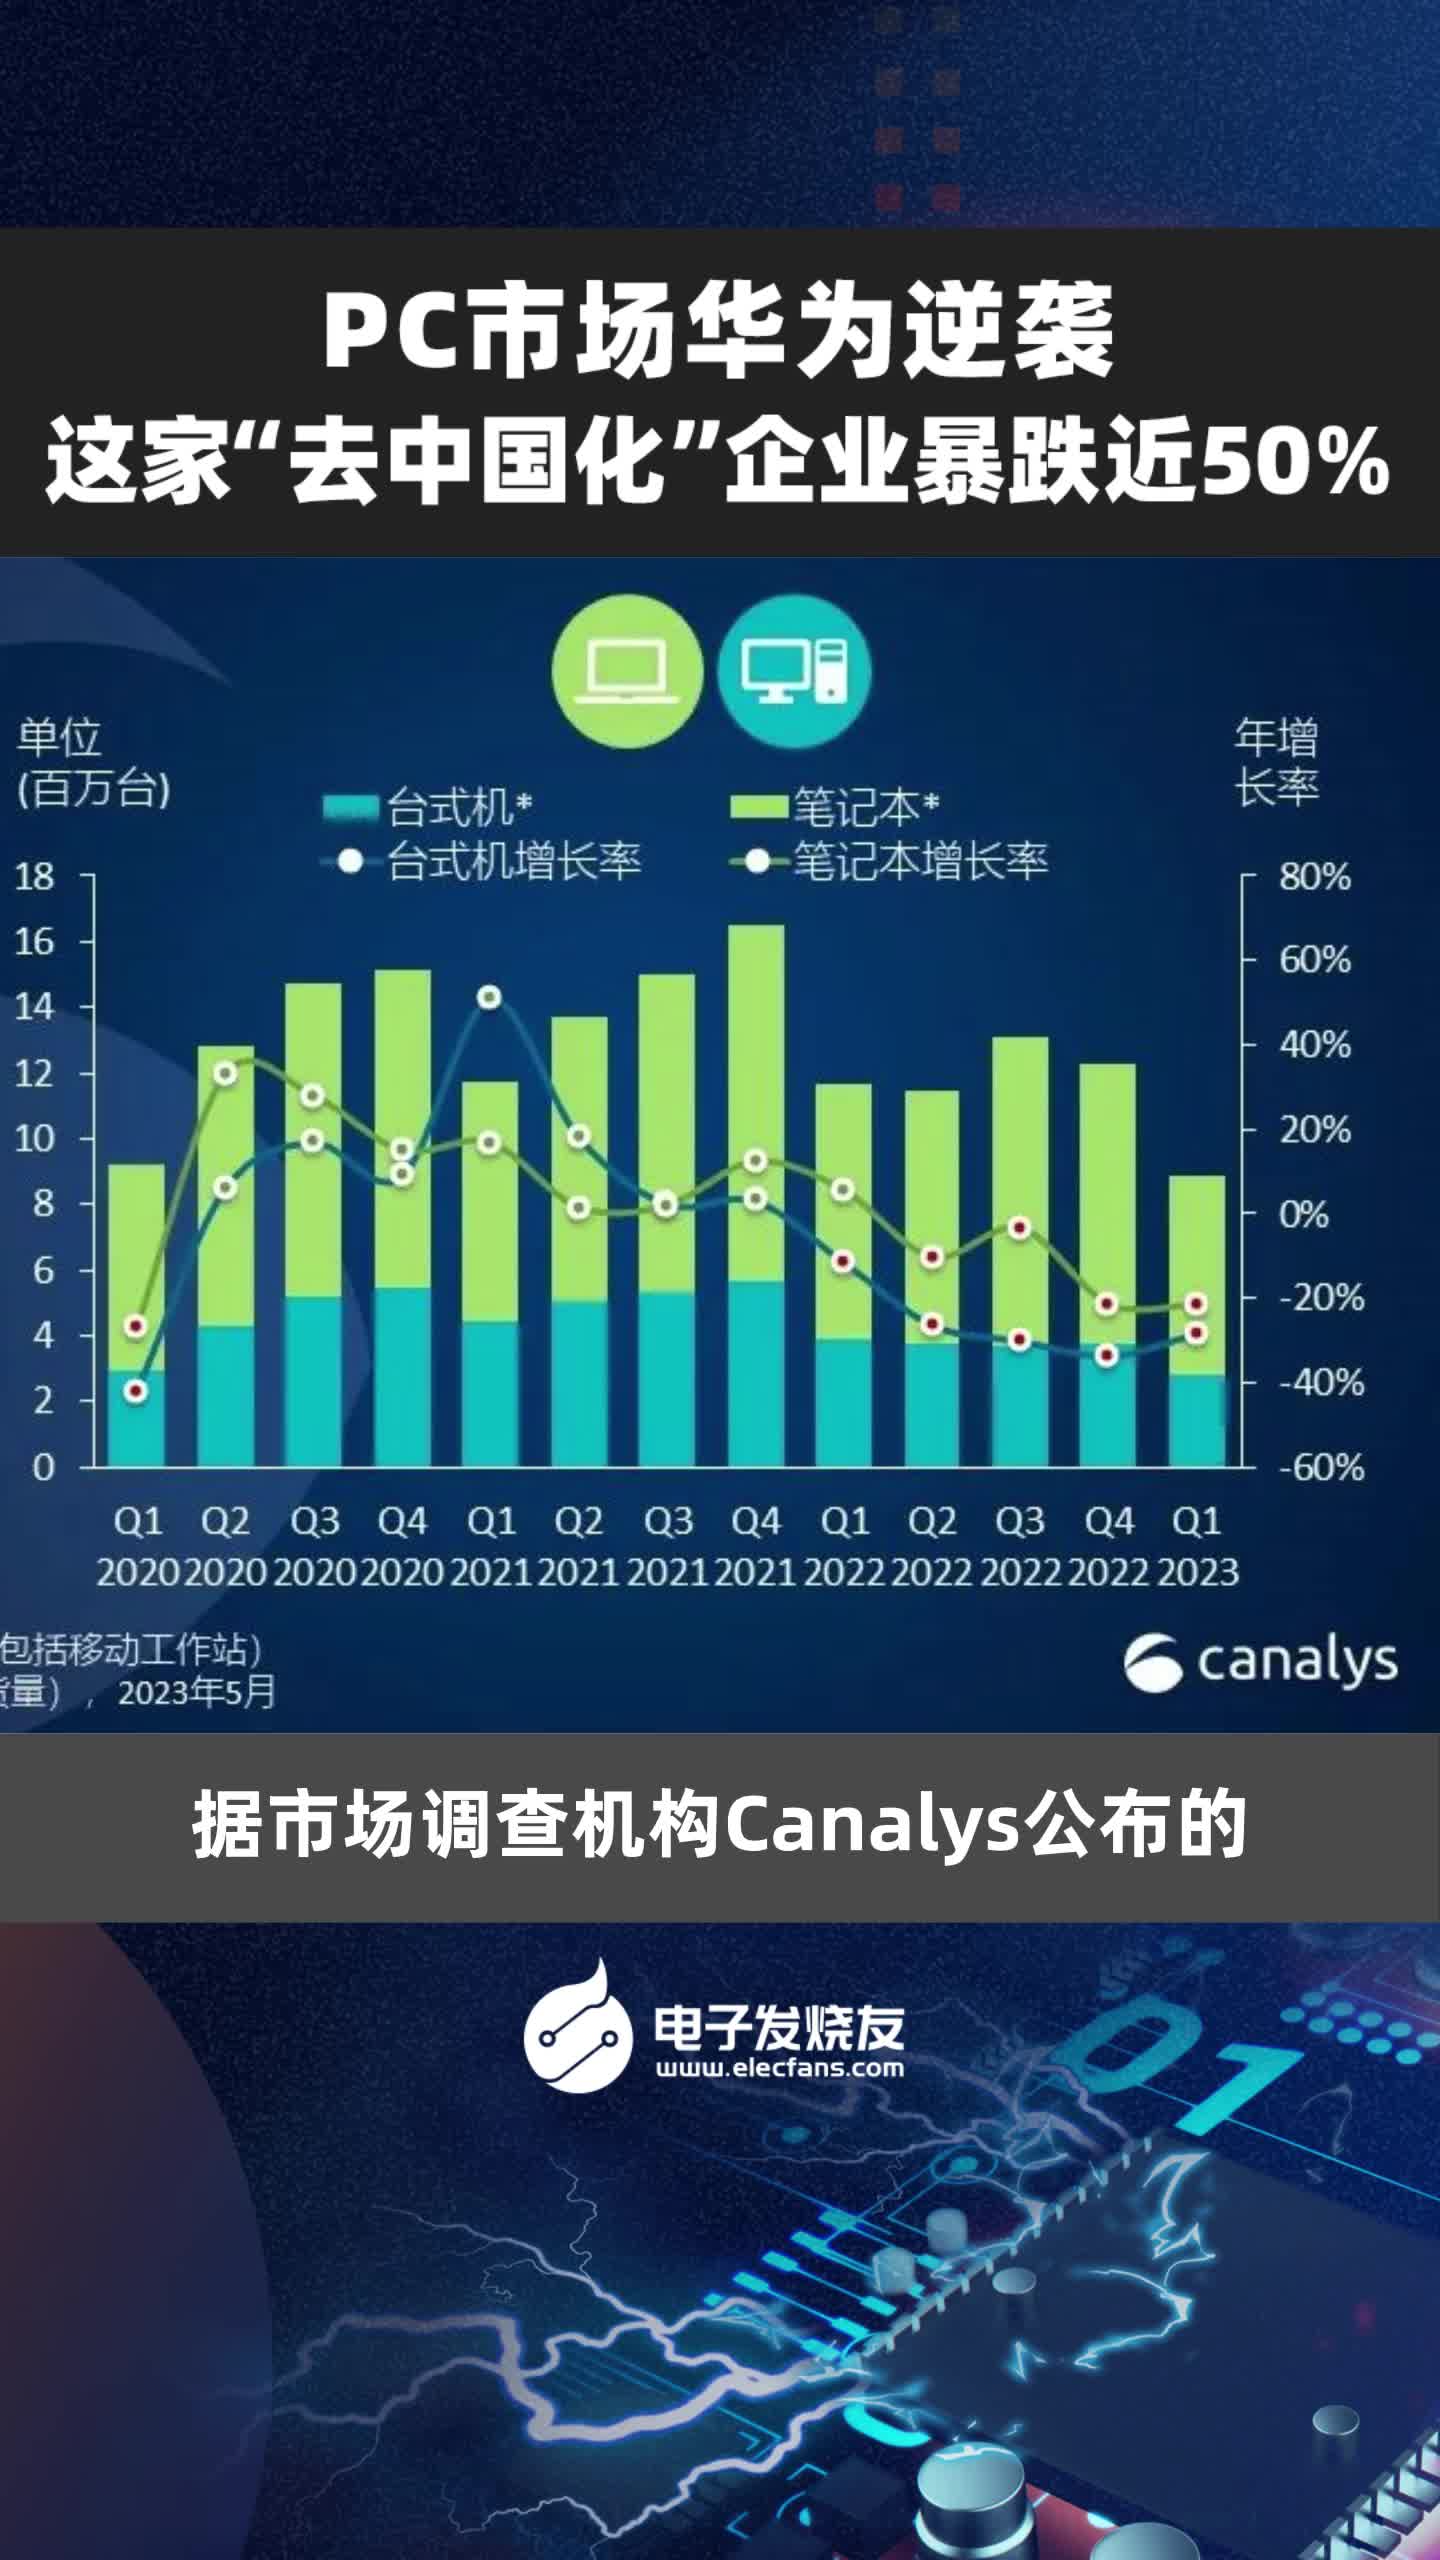 PC市场华为逆袭 这家“去中国化”企业暴跌近50%